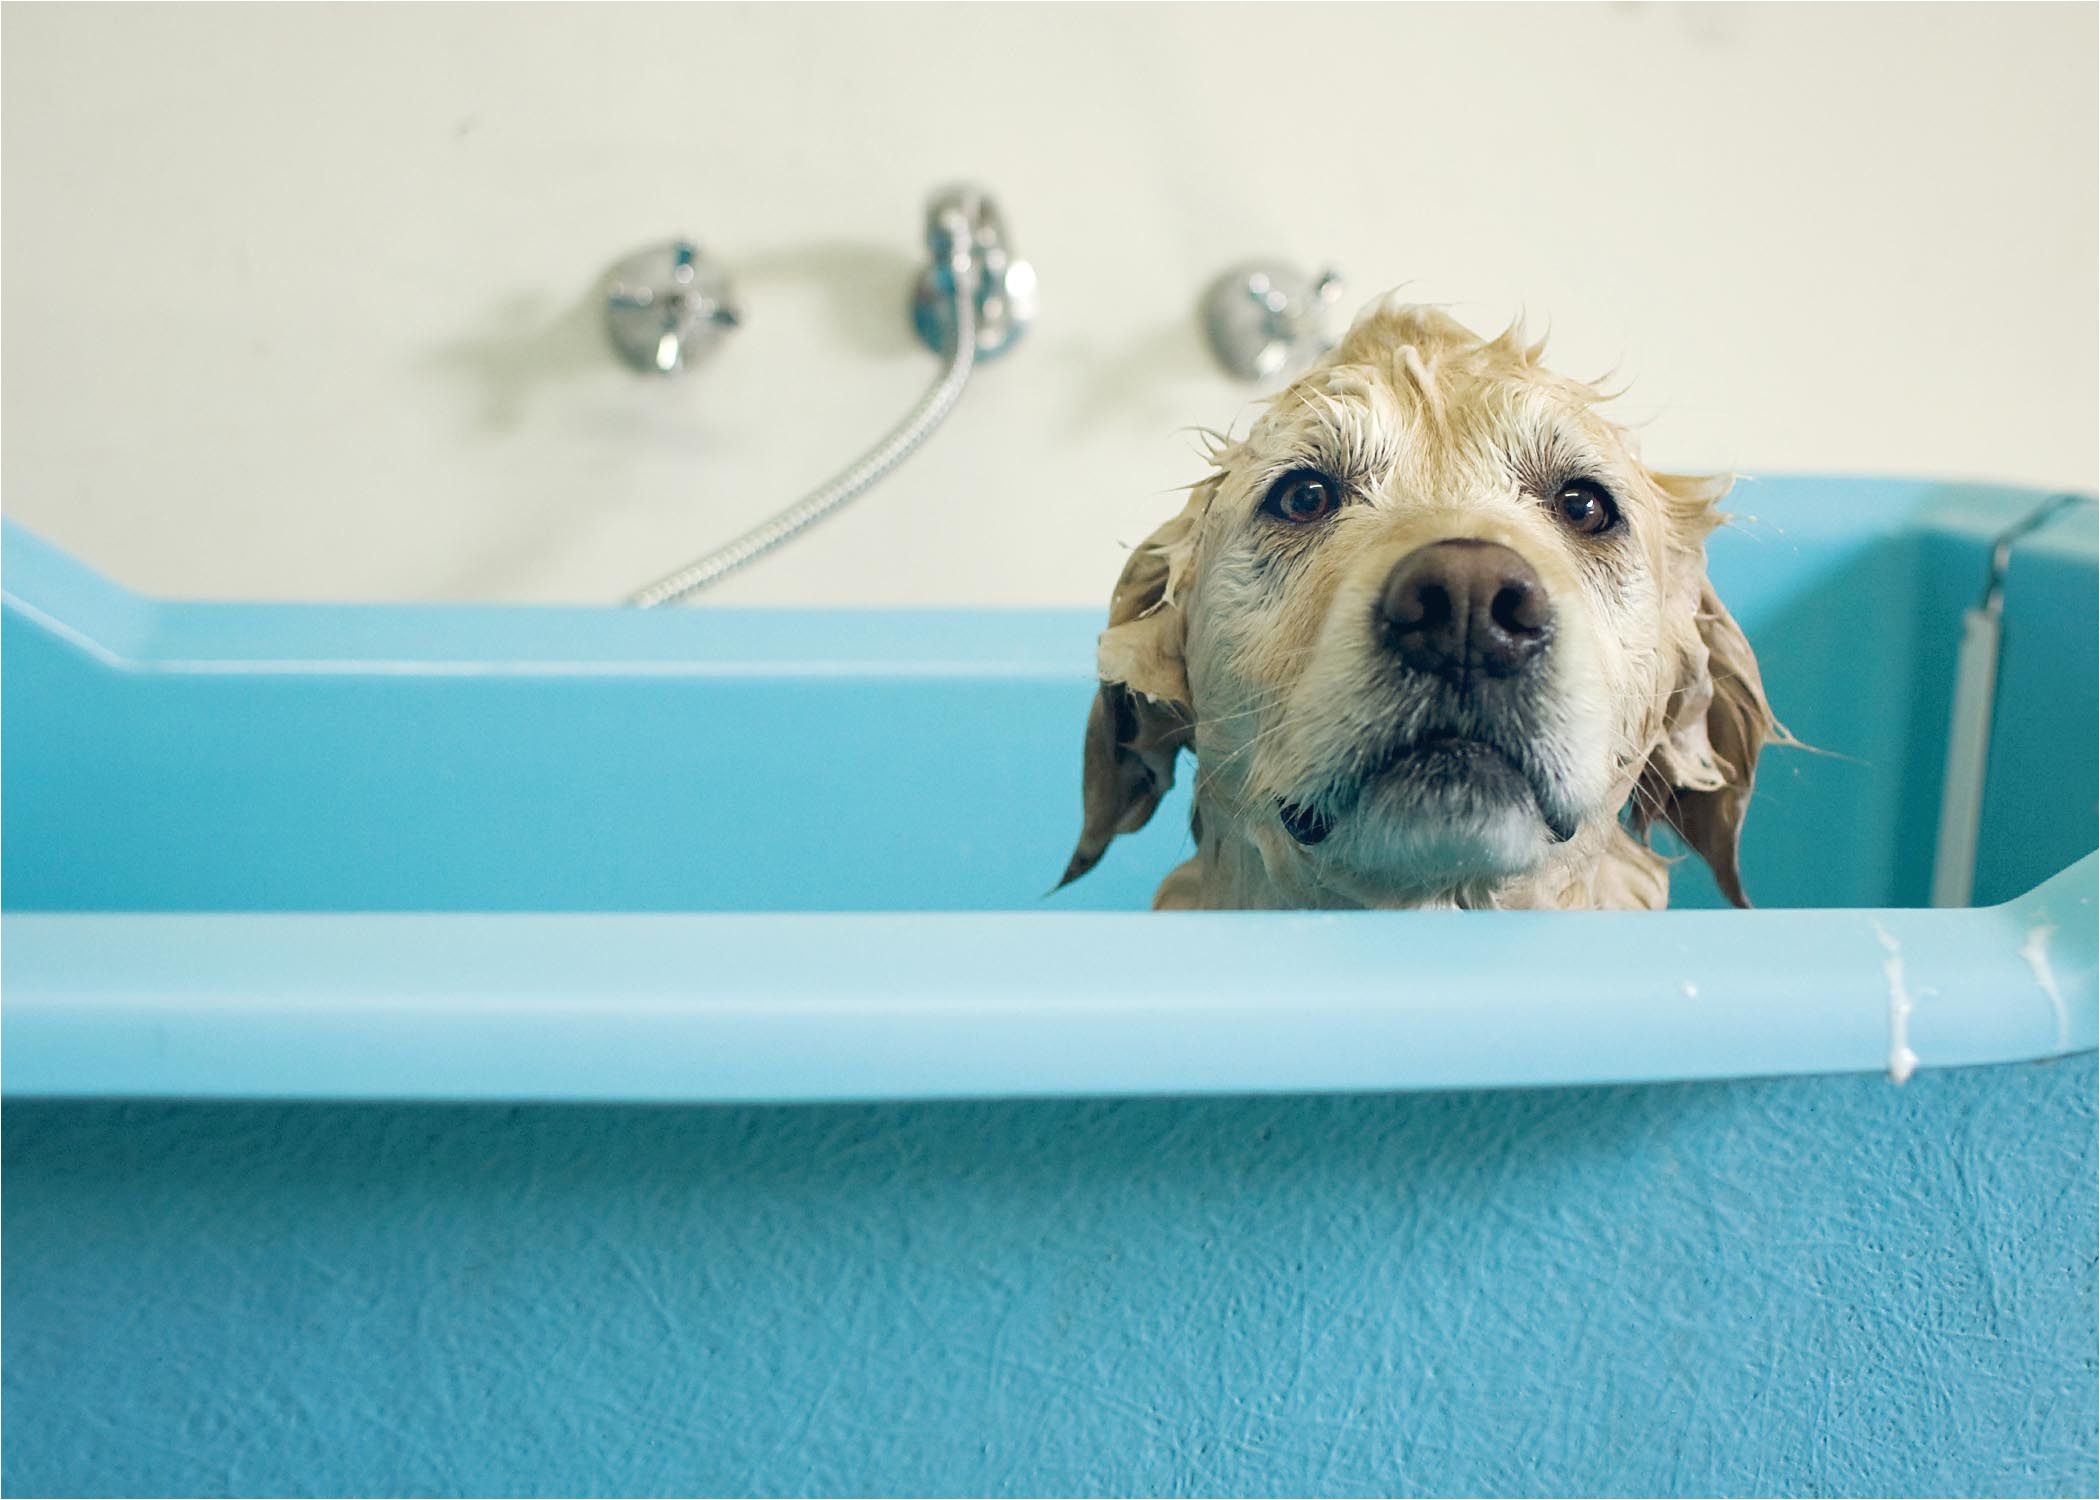 wet dog in bath 57b753985f9b58cdfdd1a59a